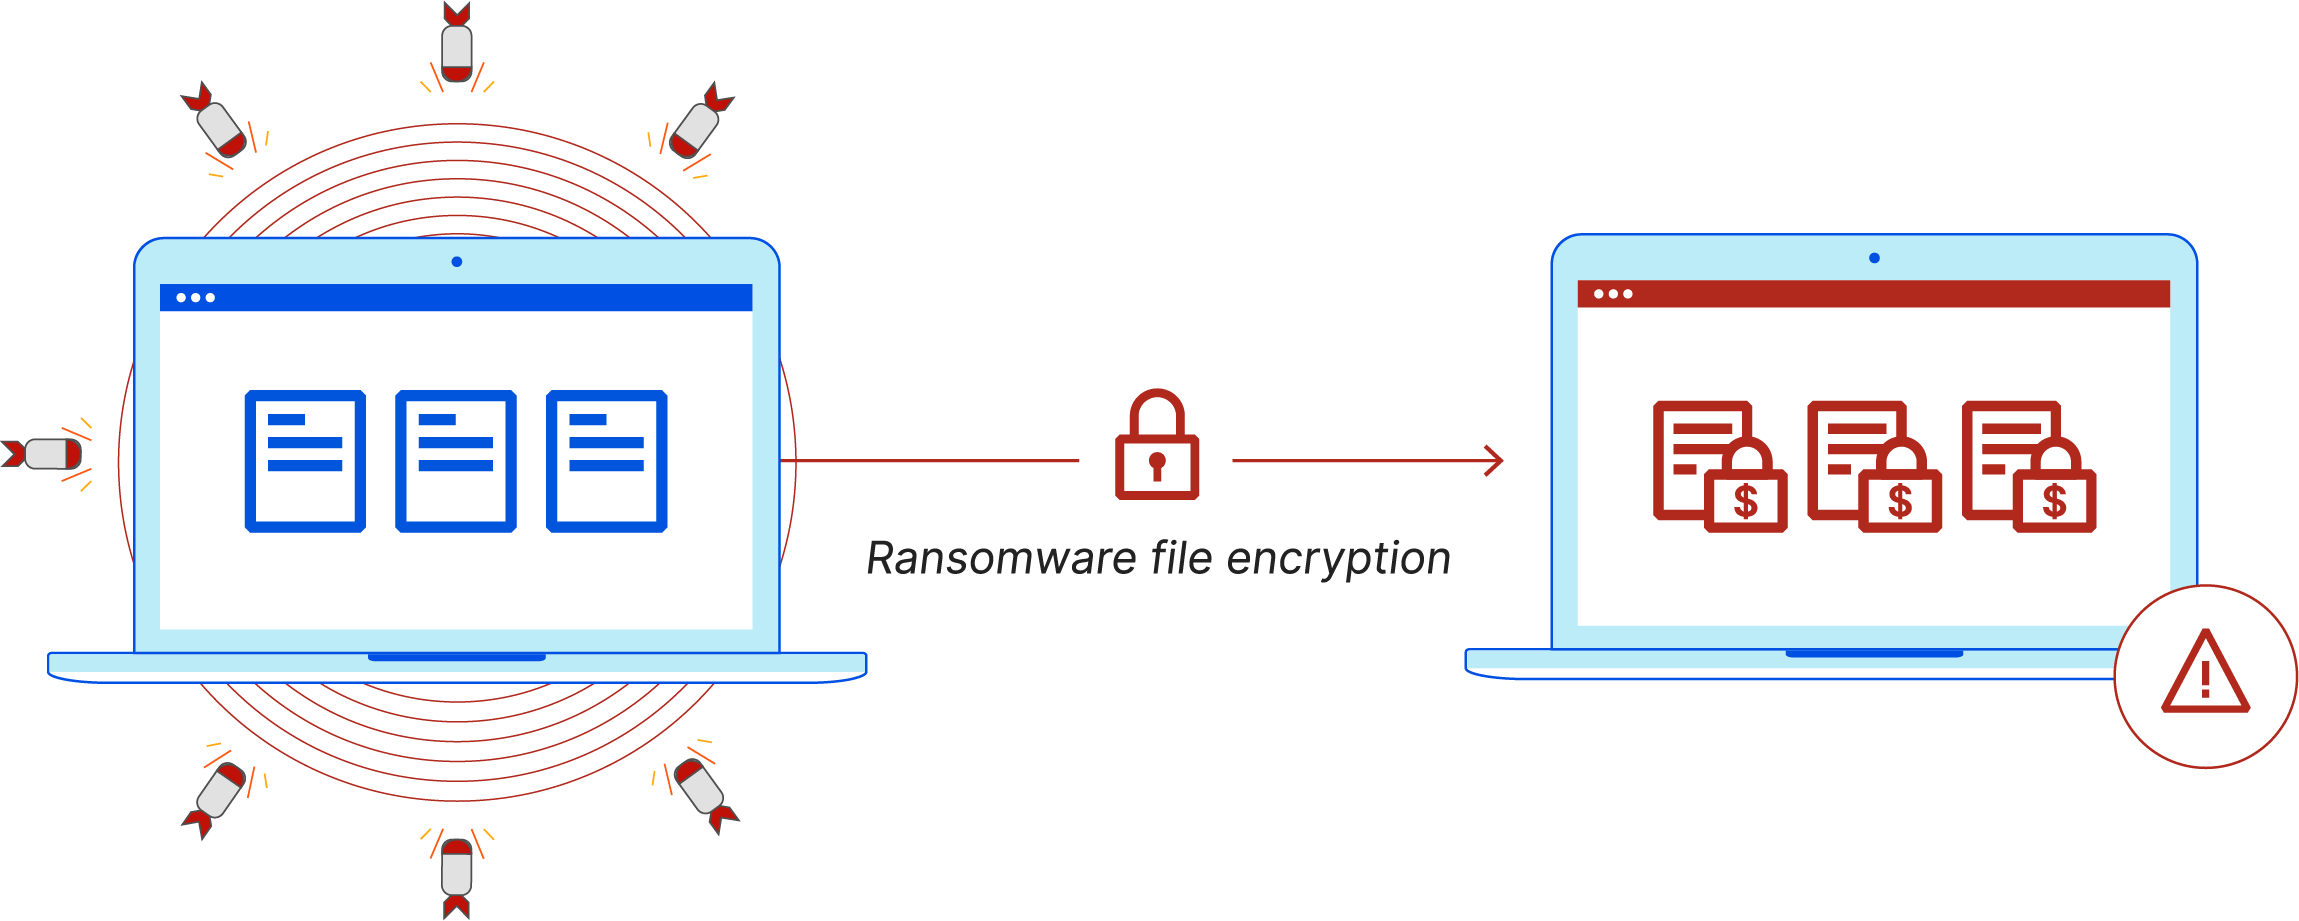 Was ist Ransomware? - Ransomware infiziert einen Computer und verschlüsselt Dateien